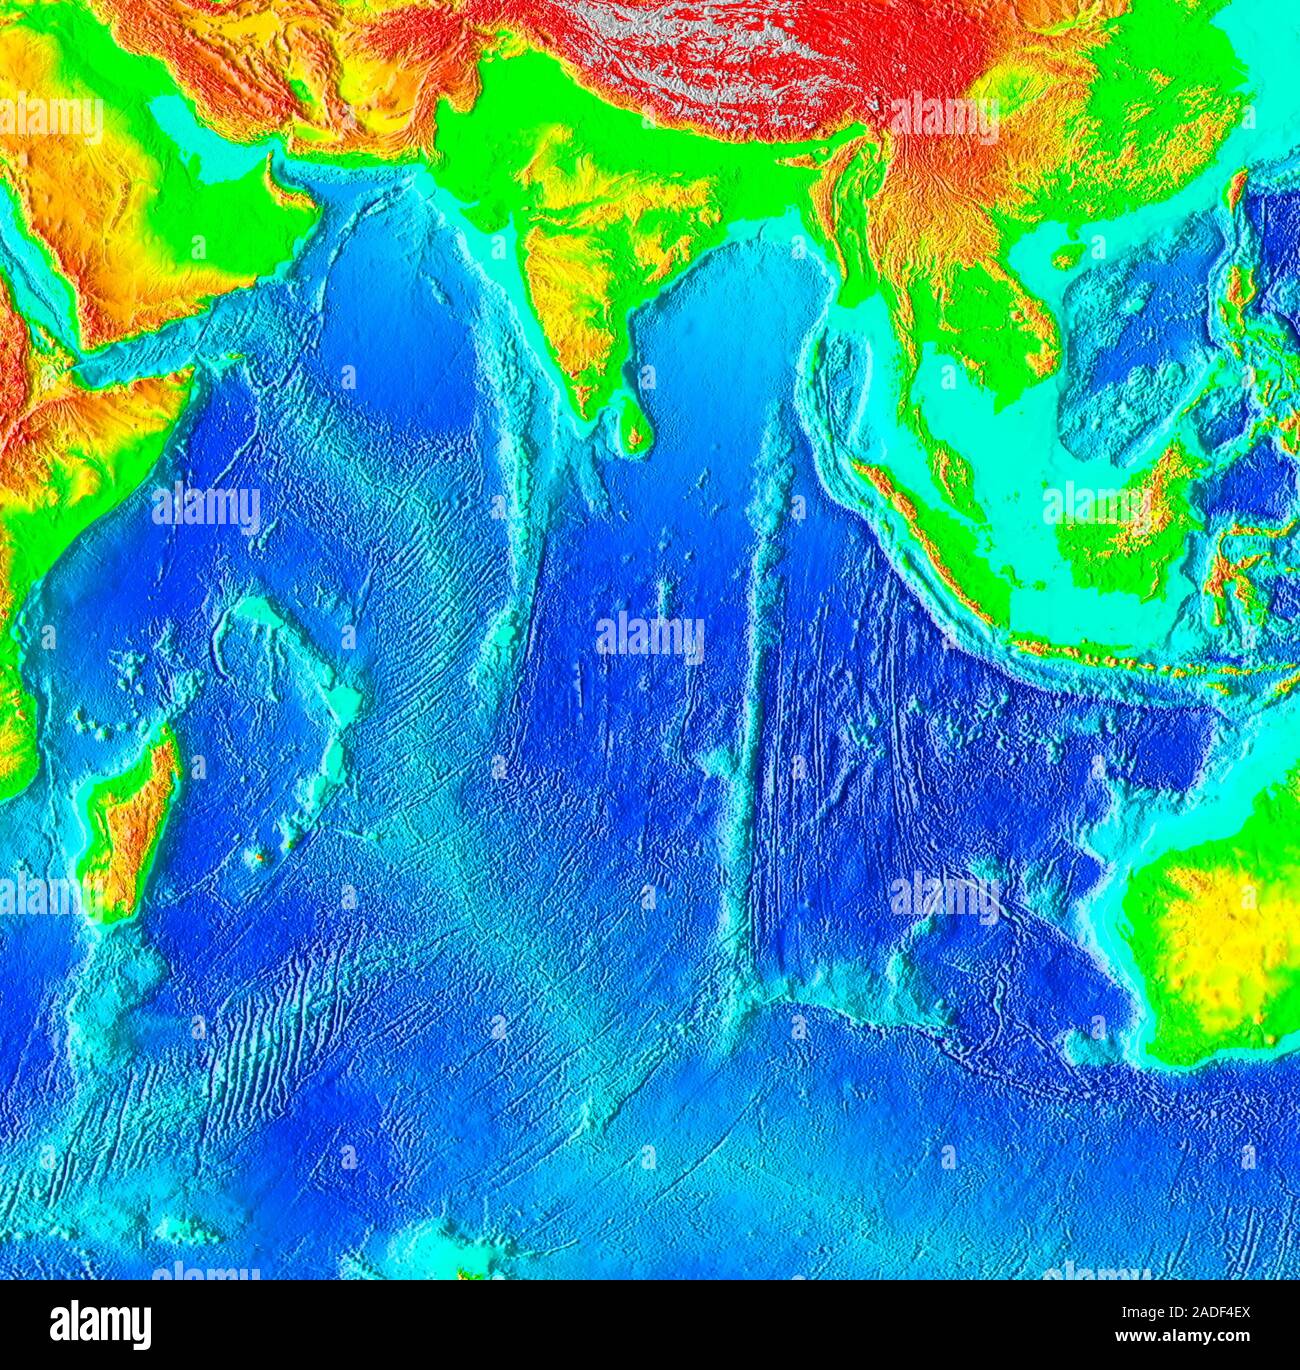 Меридианы индийского океана. Индийский океан рисунок. Макет индийского океана. Безопасности в индийском океане. Британская территория в индийском океане.